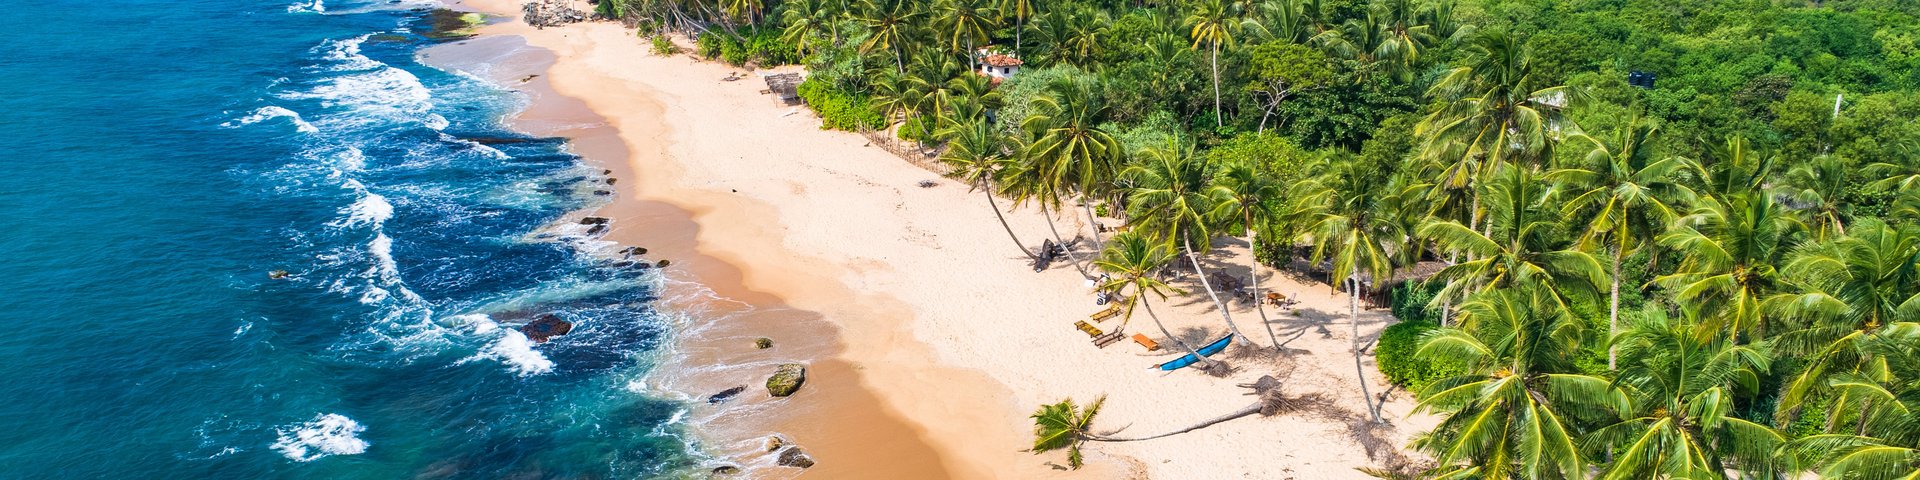 Blick auf den Strand, das Meer und die Palmen von Tangalle in Sri Lanka